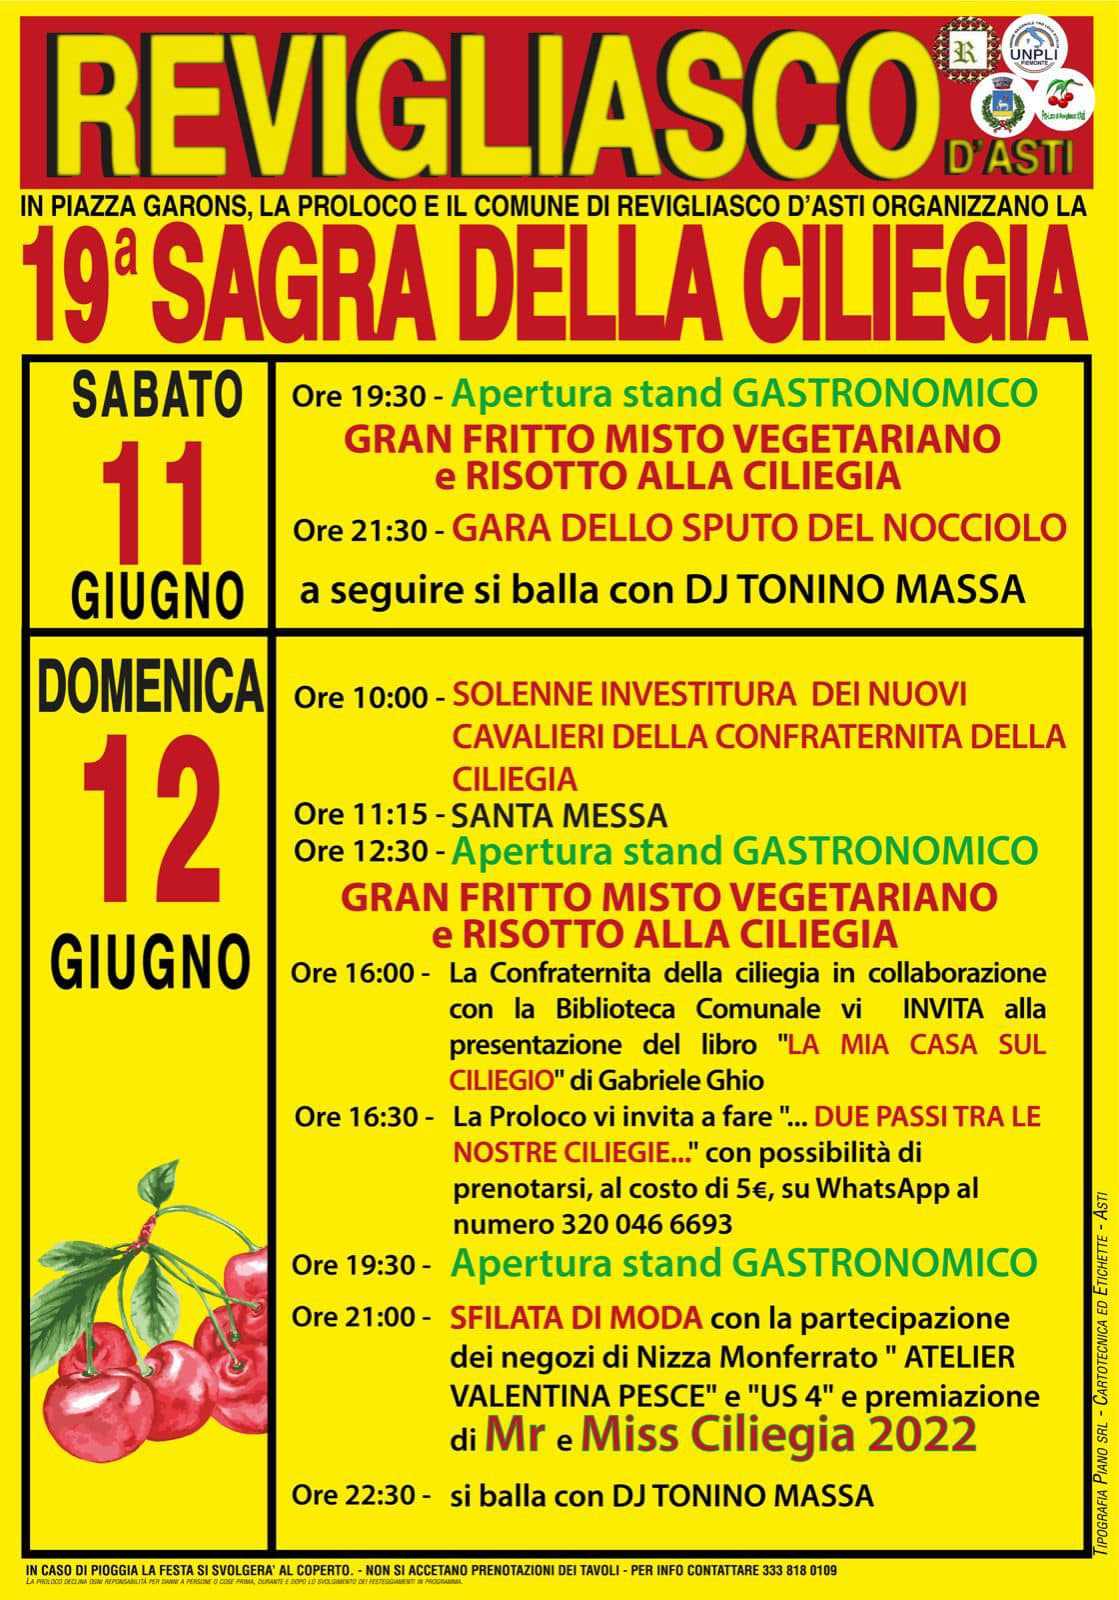 Revigliasco d'Asti (AT)
"19 Sagra della Ciliegia"
11-12 Giugno 2022